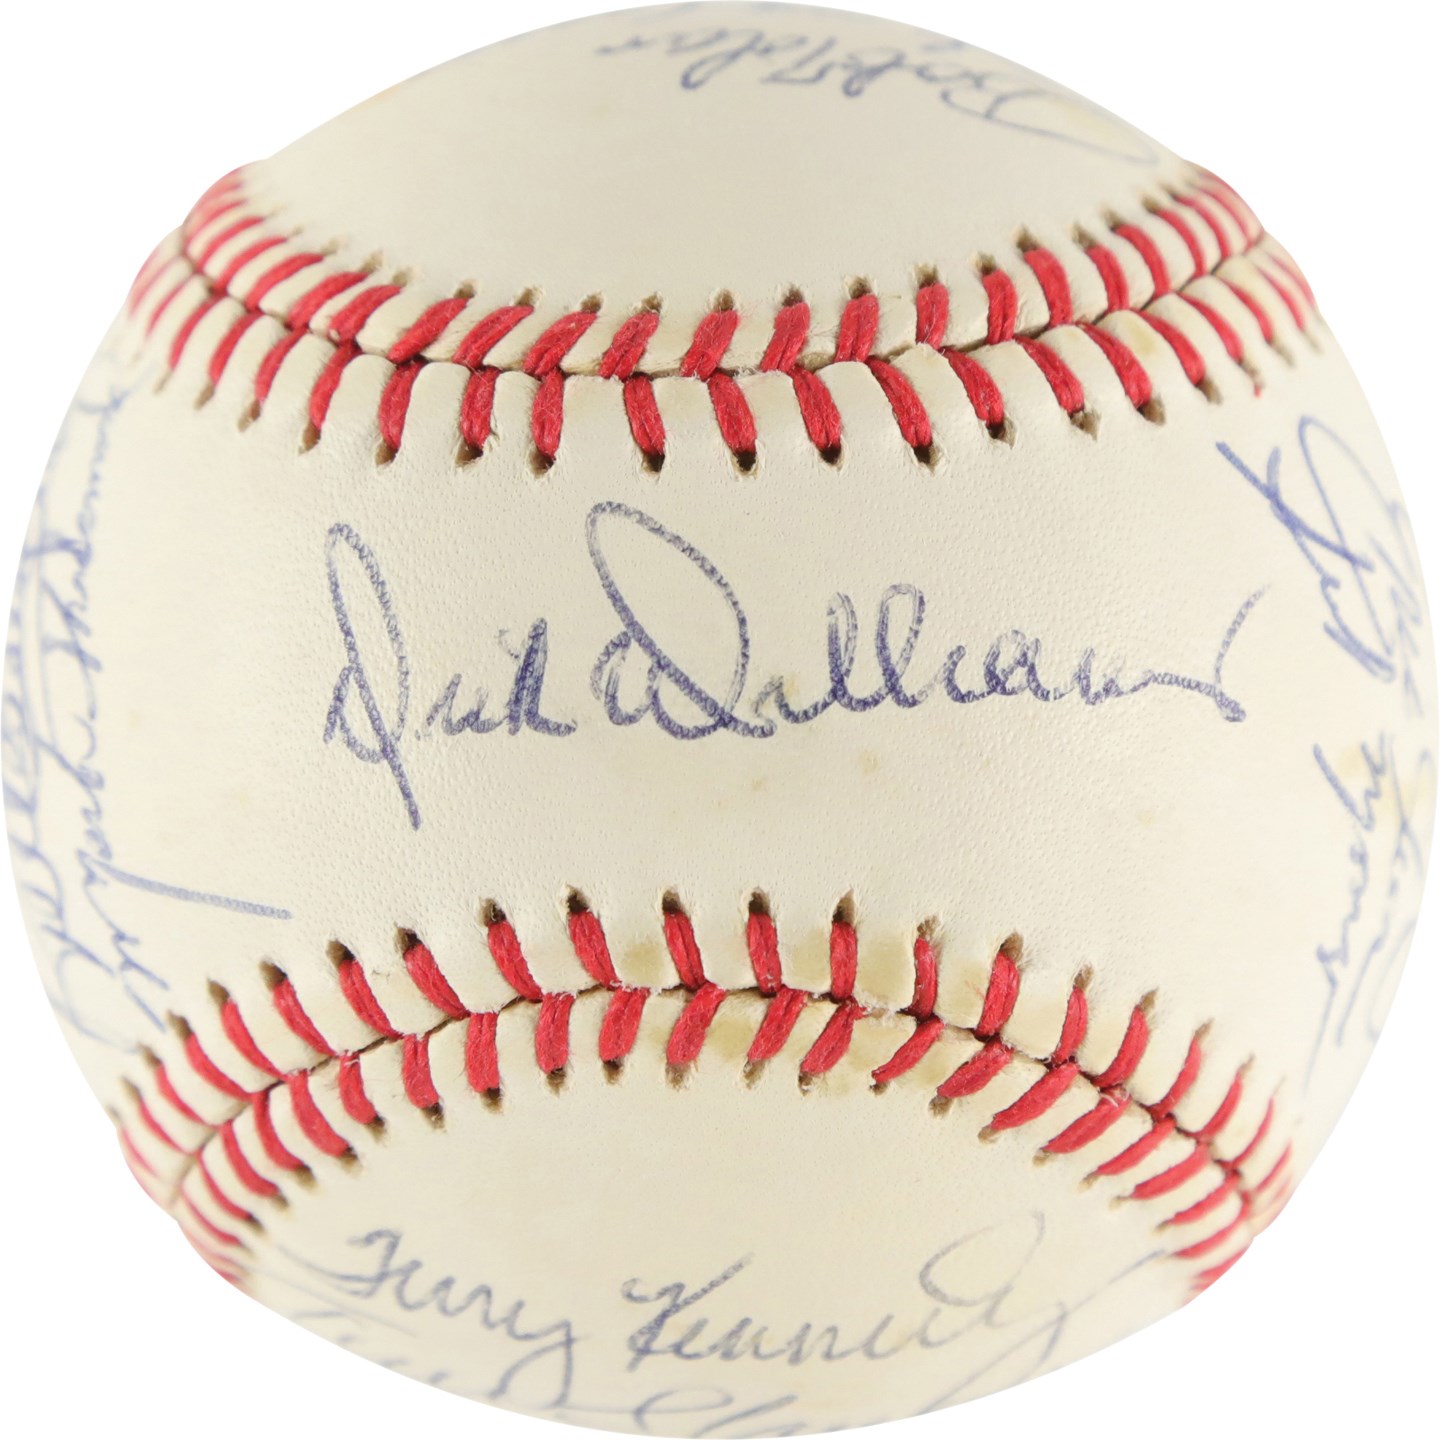 - 1983 San Diego Padres Team-Signed Baseball w/Early Tony Gwynn Signature